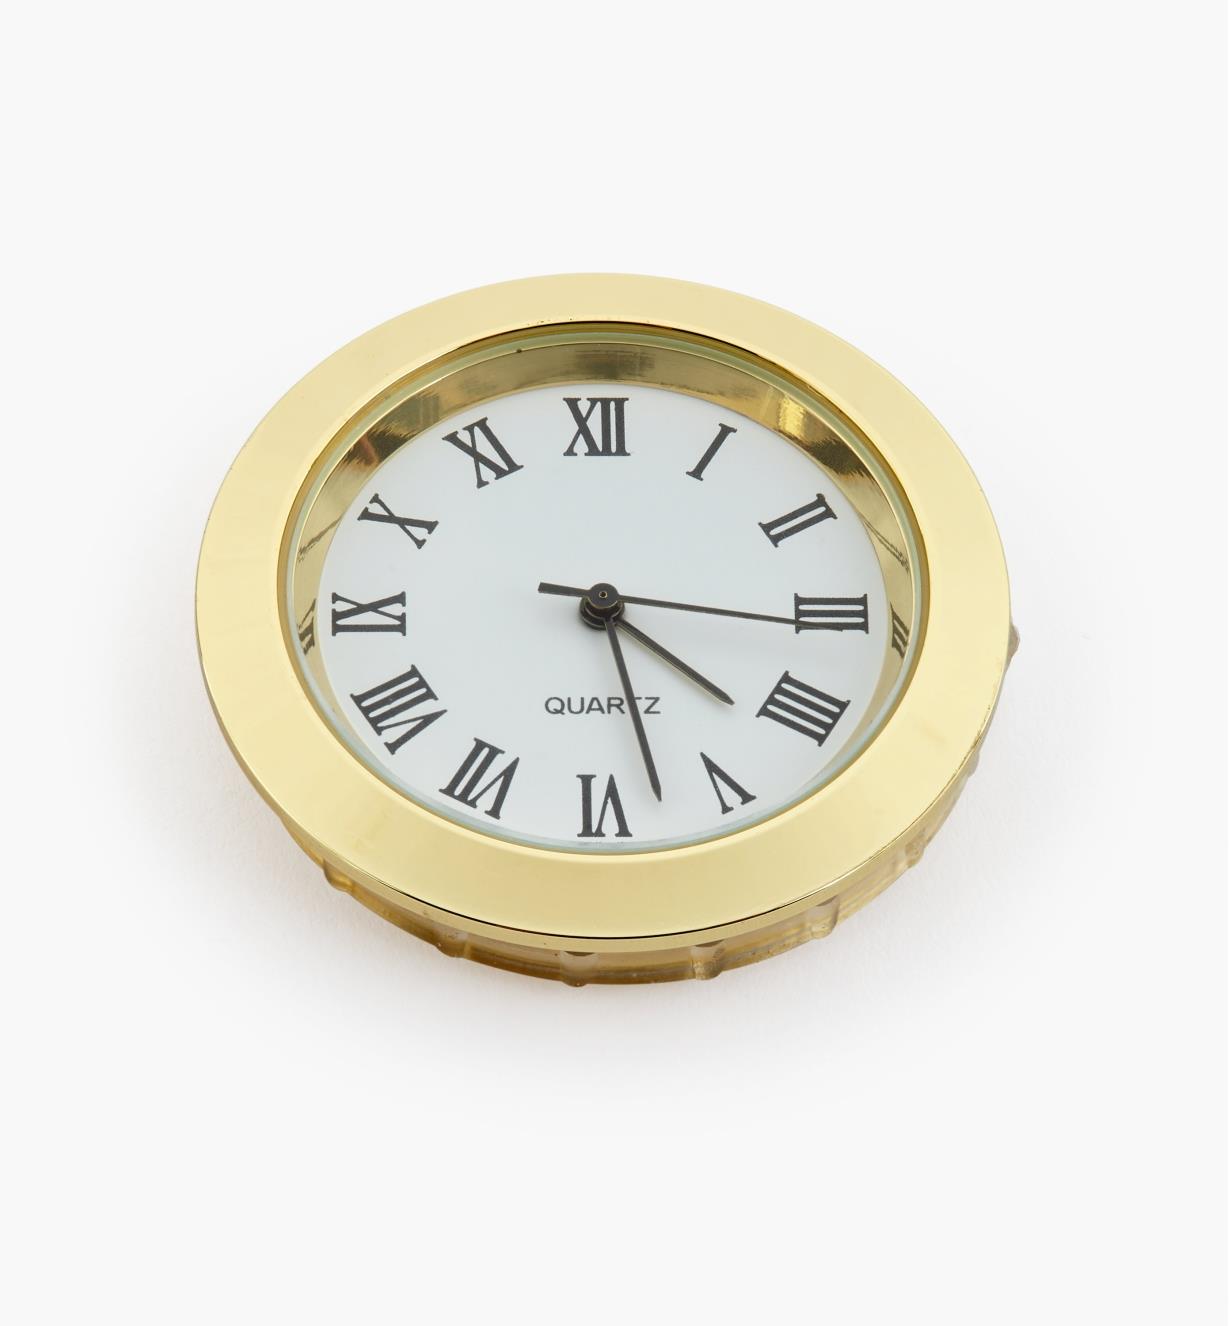 44K0151 - Horloge, cadran blanc à chiffres romains, lunette or